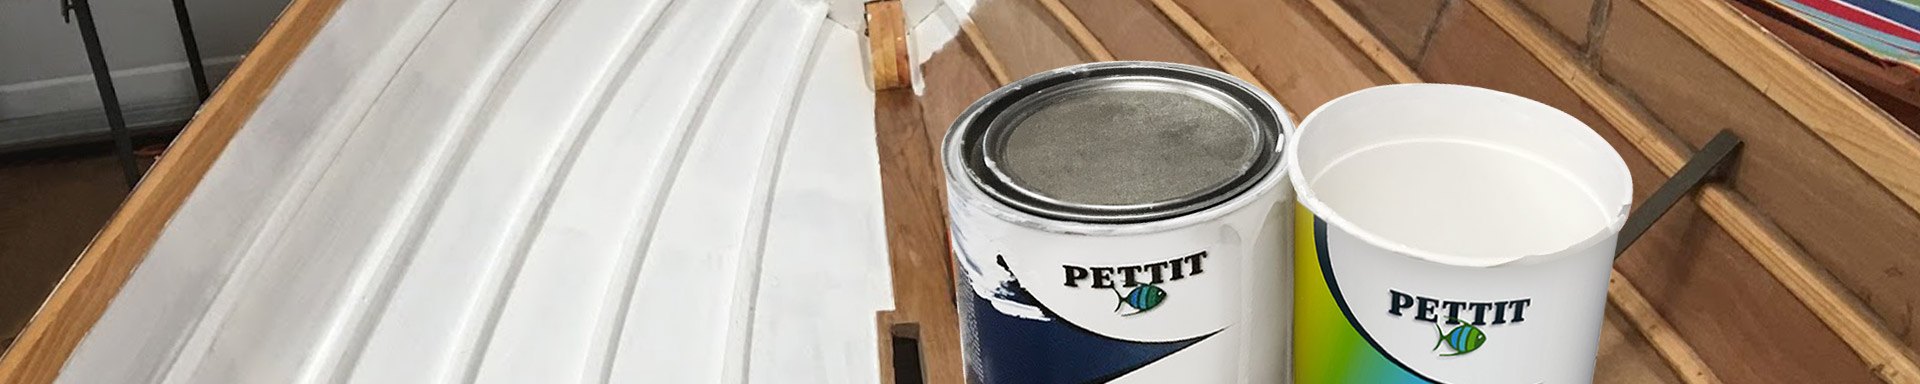 Pettit Paint Paints & Varnishes